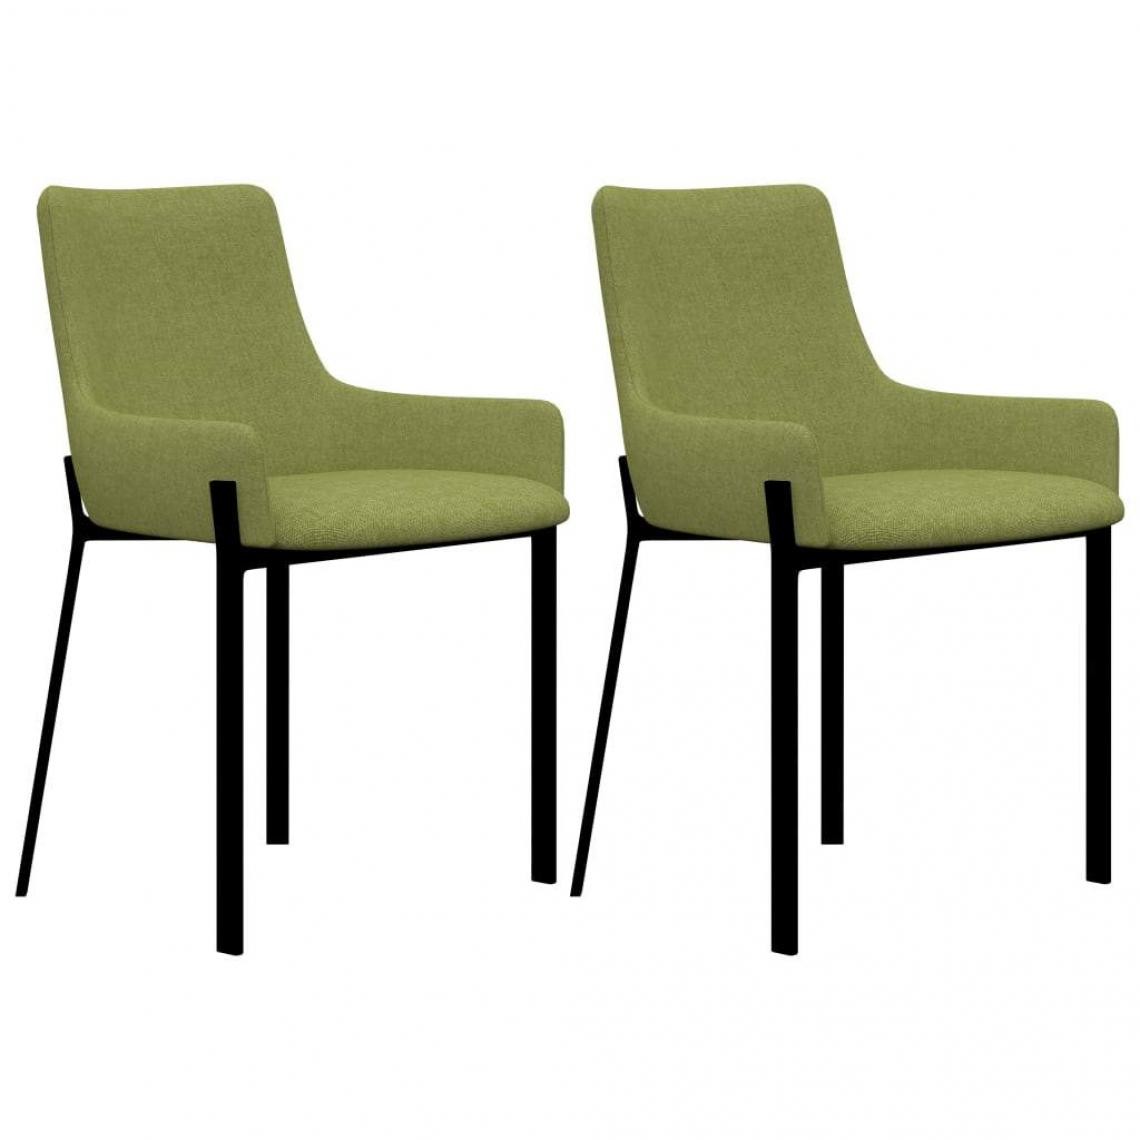 Decoshop26 - Lot de 2 chaises de salle à manger cuisine design rétro tissu vert CDS021118 - Chaises